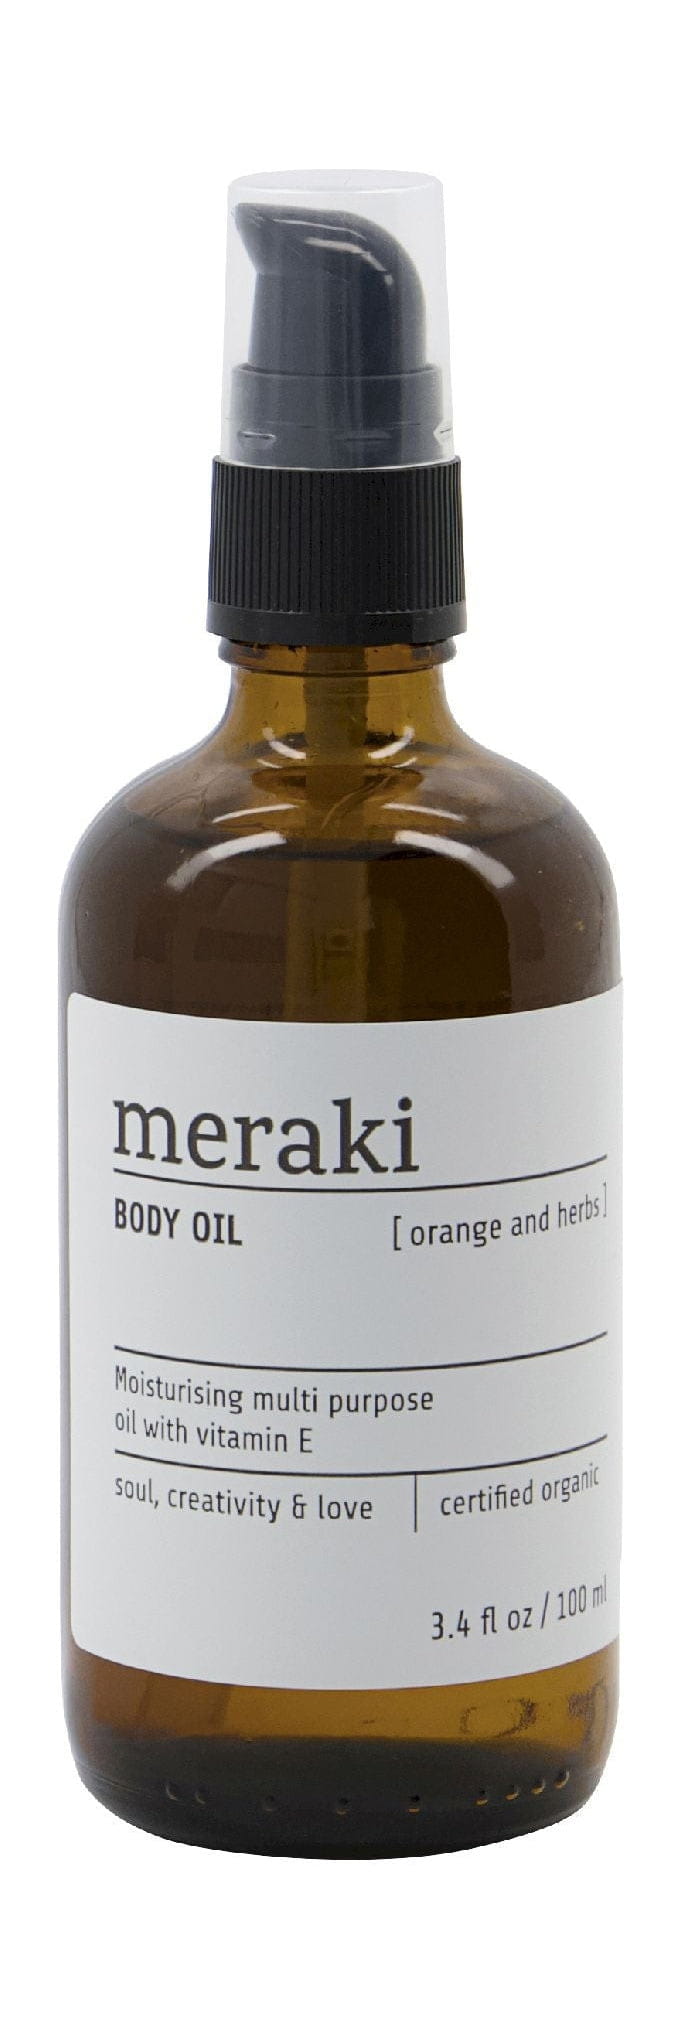 Meraki Body Oil 100 Ml, Orange & Herbs